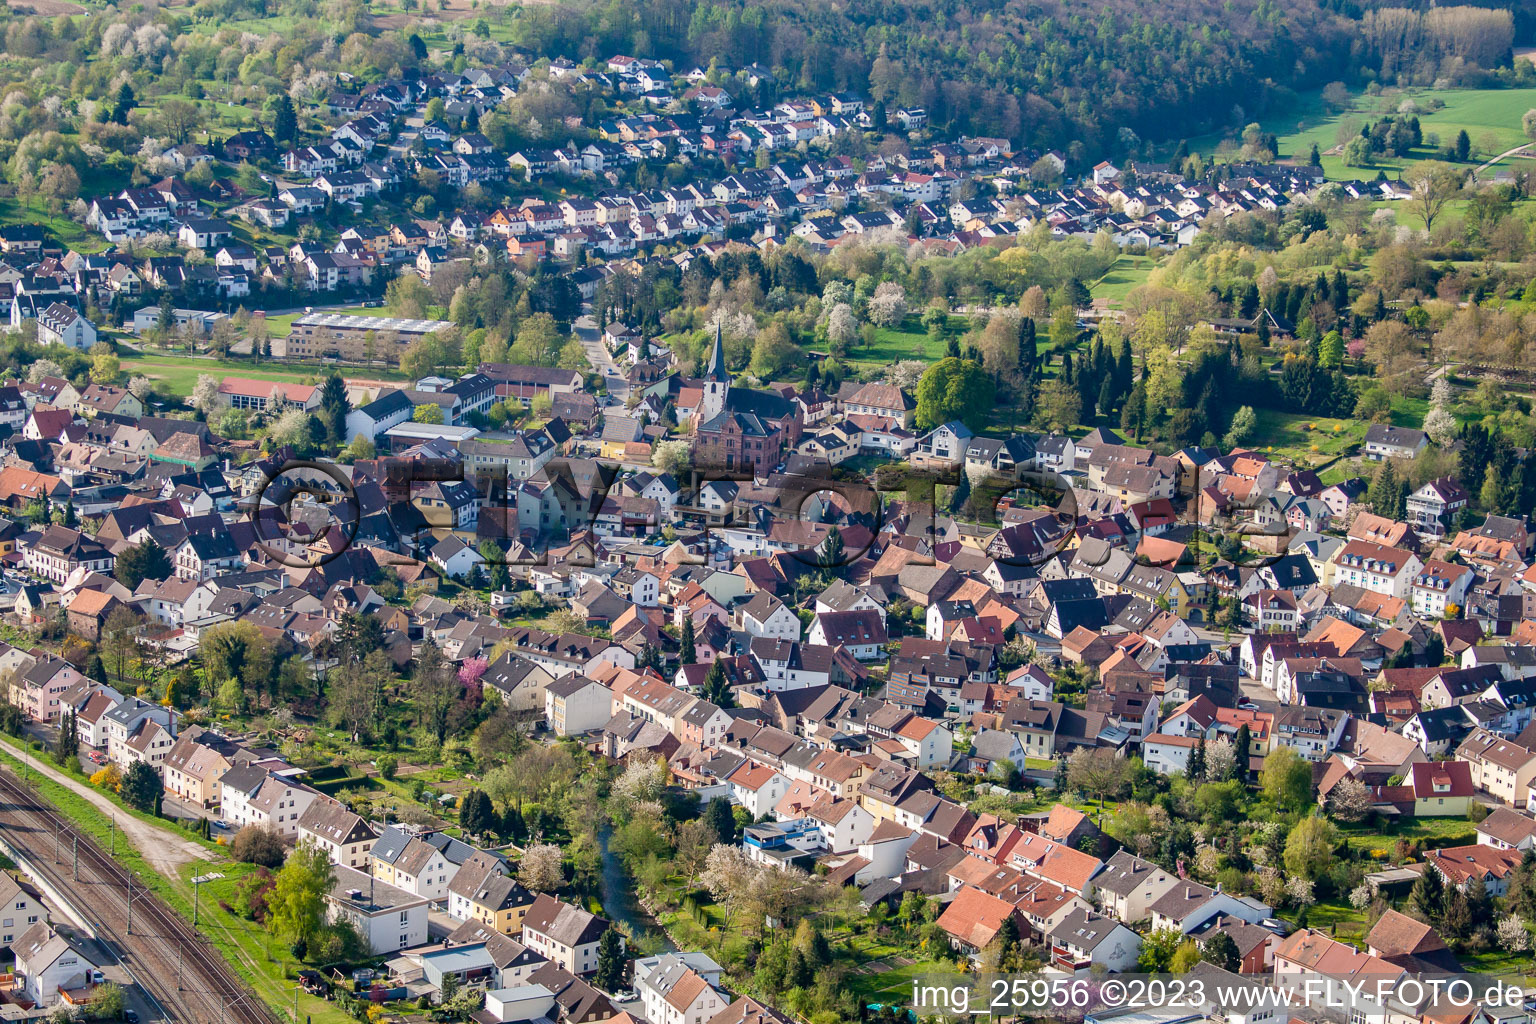 District Söllingen in Pfinztal in the state Baden-Wuerttemberg, Germany